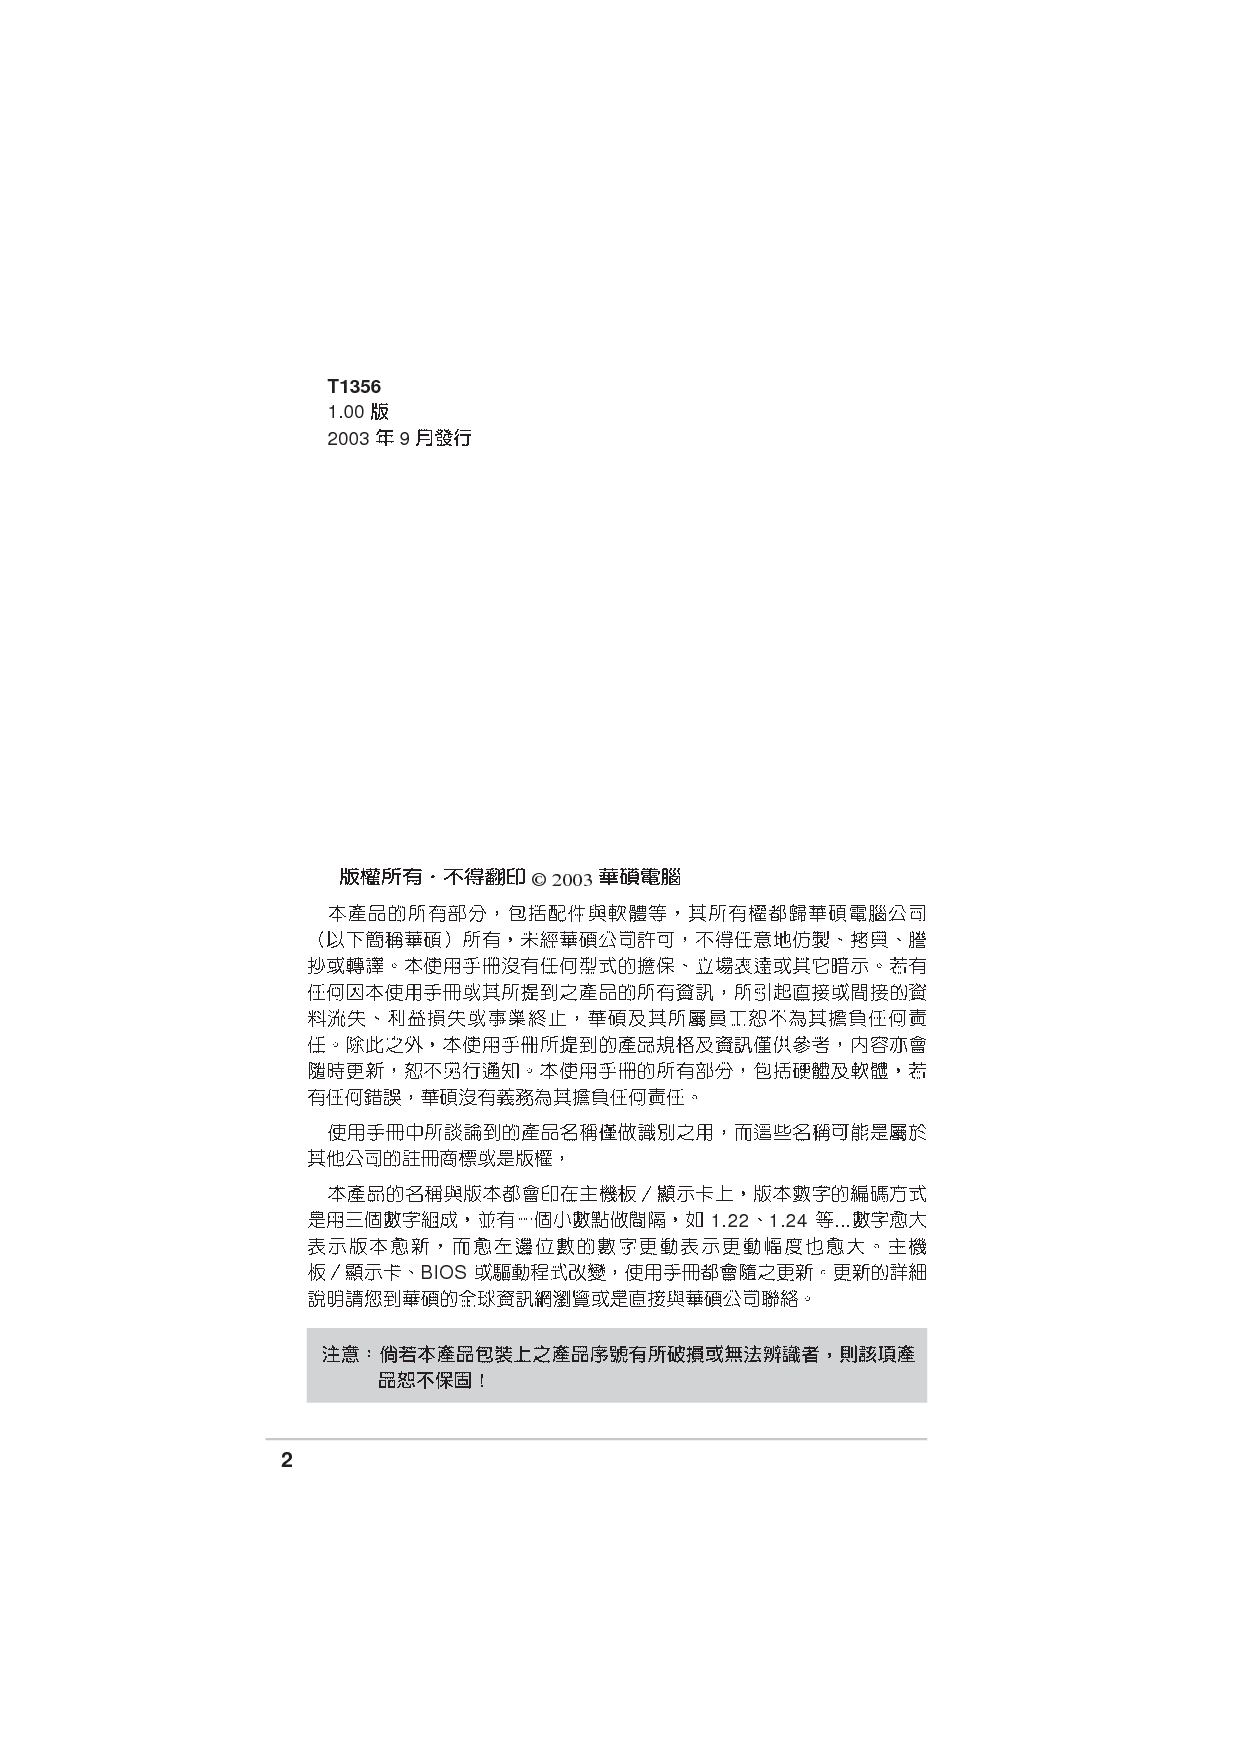 华硕 Asus PC-DL Deluxe 用户手册 第1页